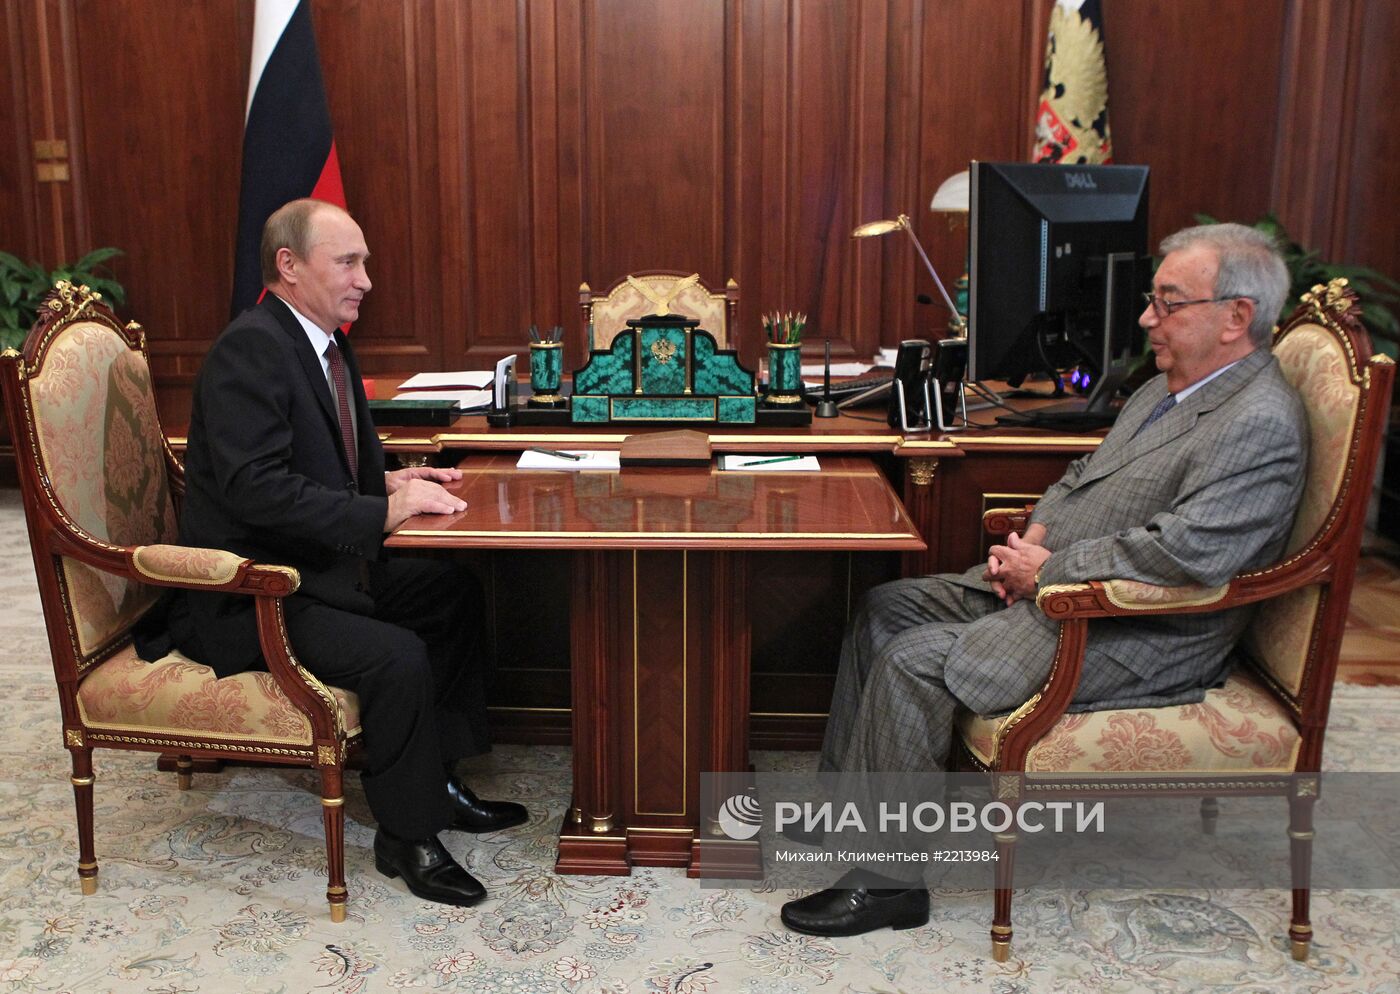 В.Путин встретился с Е.Примаковым в Кремле